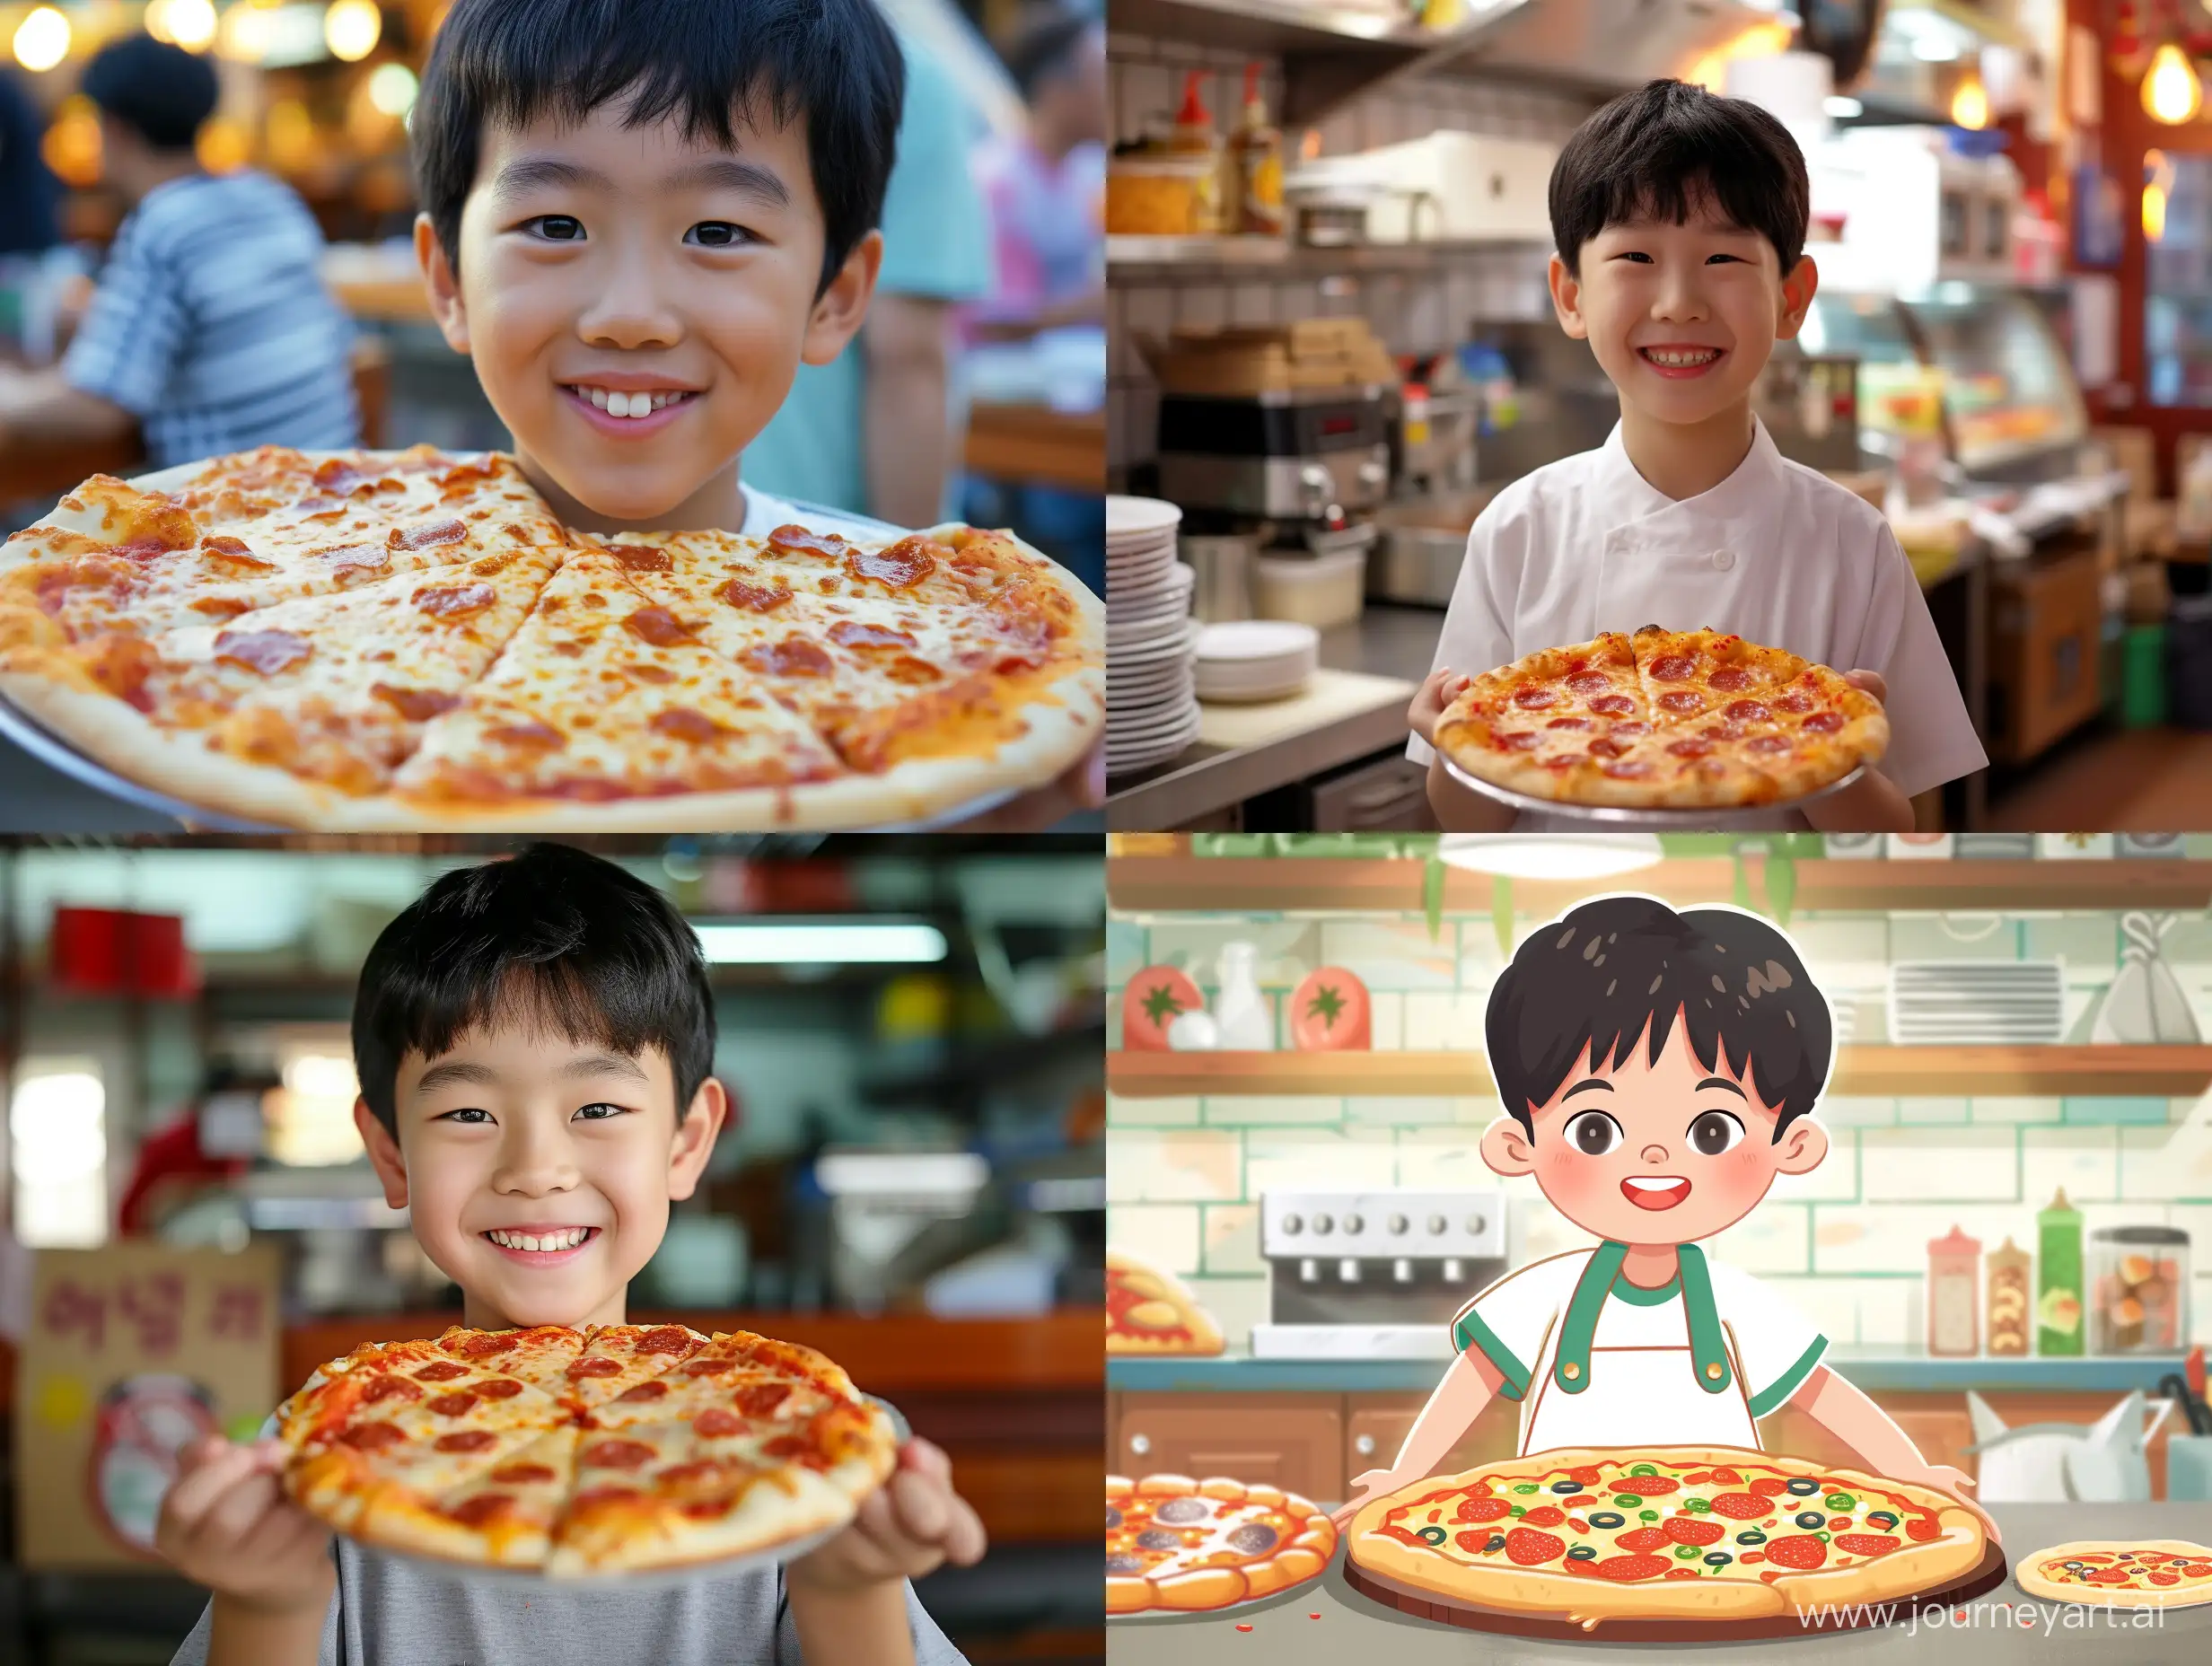 A Korean pizza boy